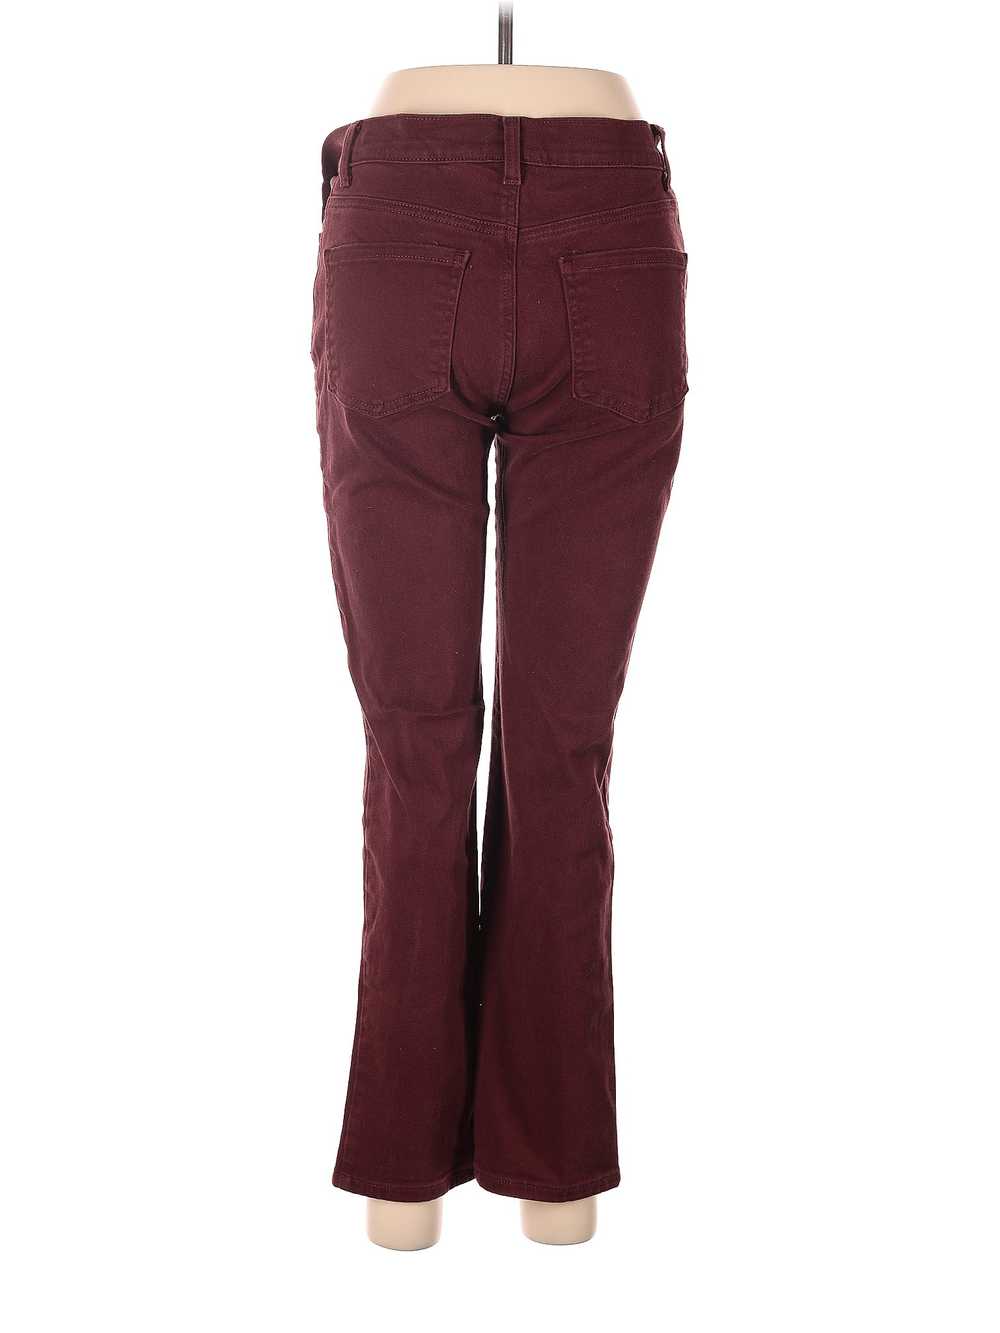 Gloria Vanderbilt Women Red Jeans 6 - image 2